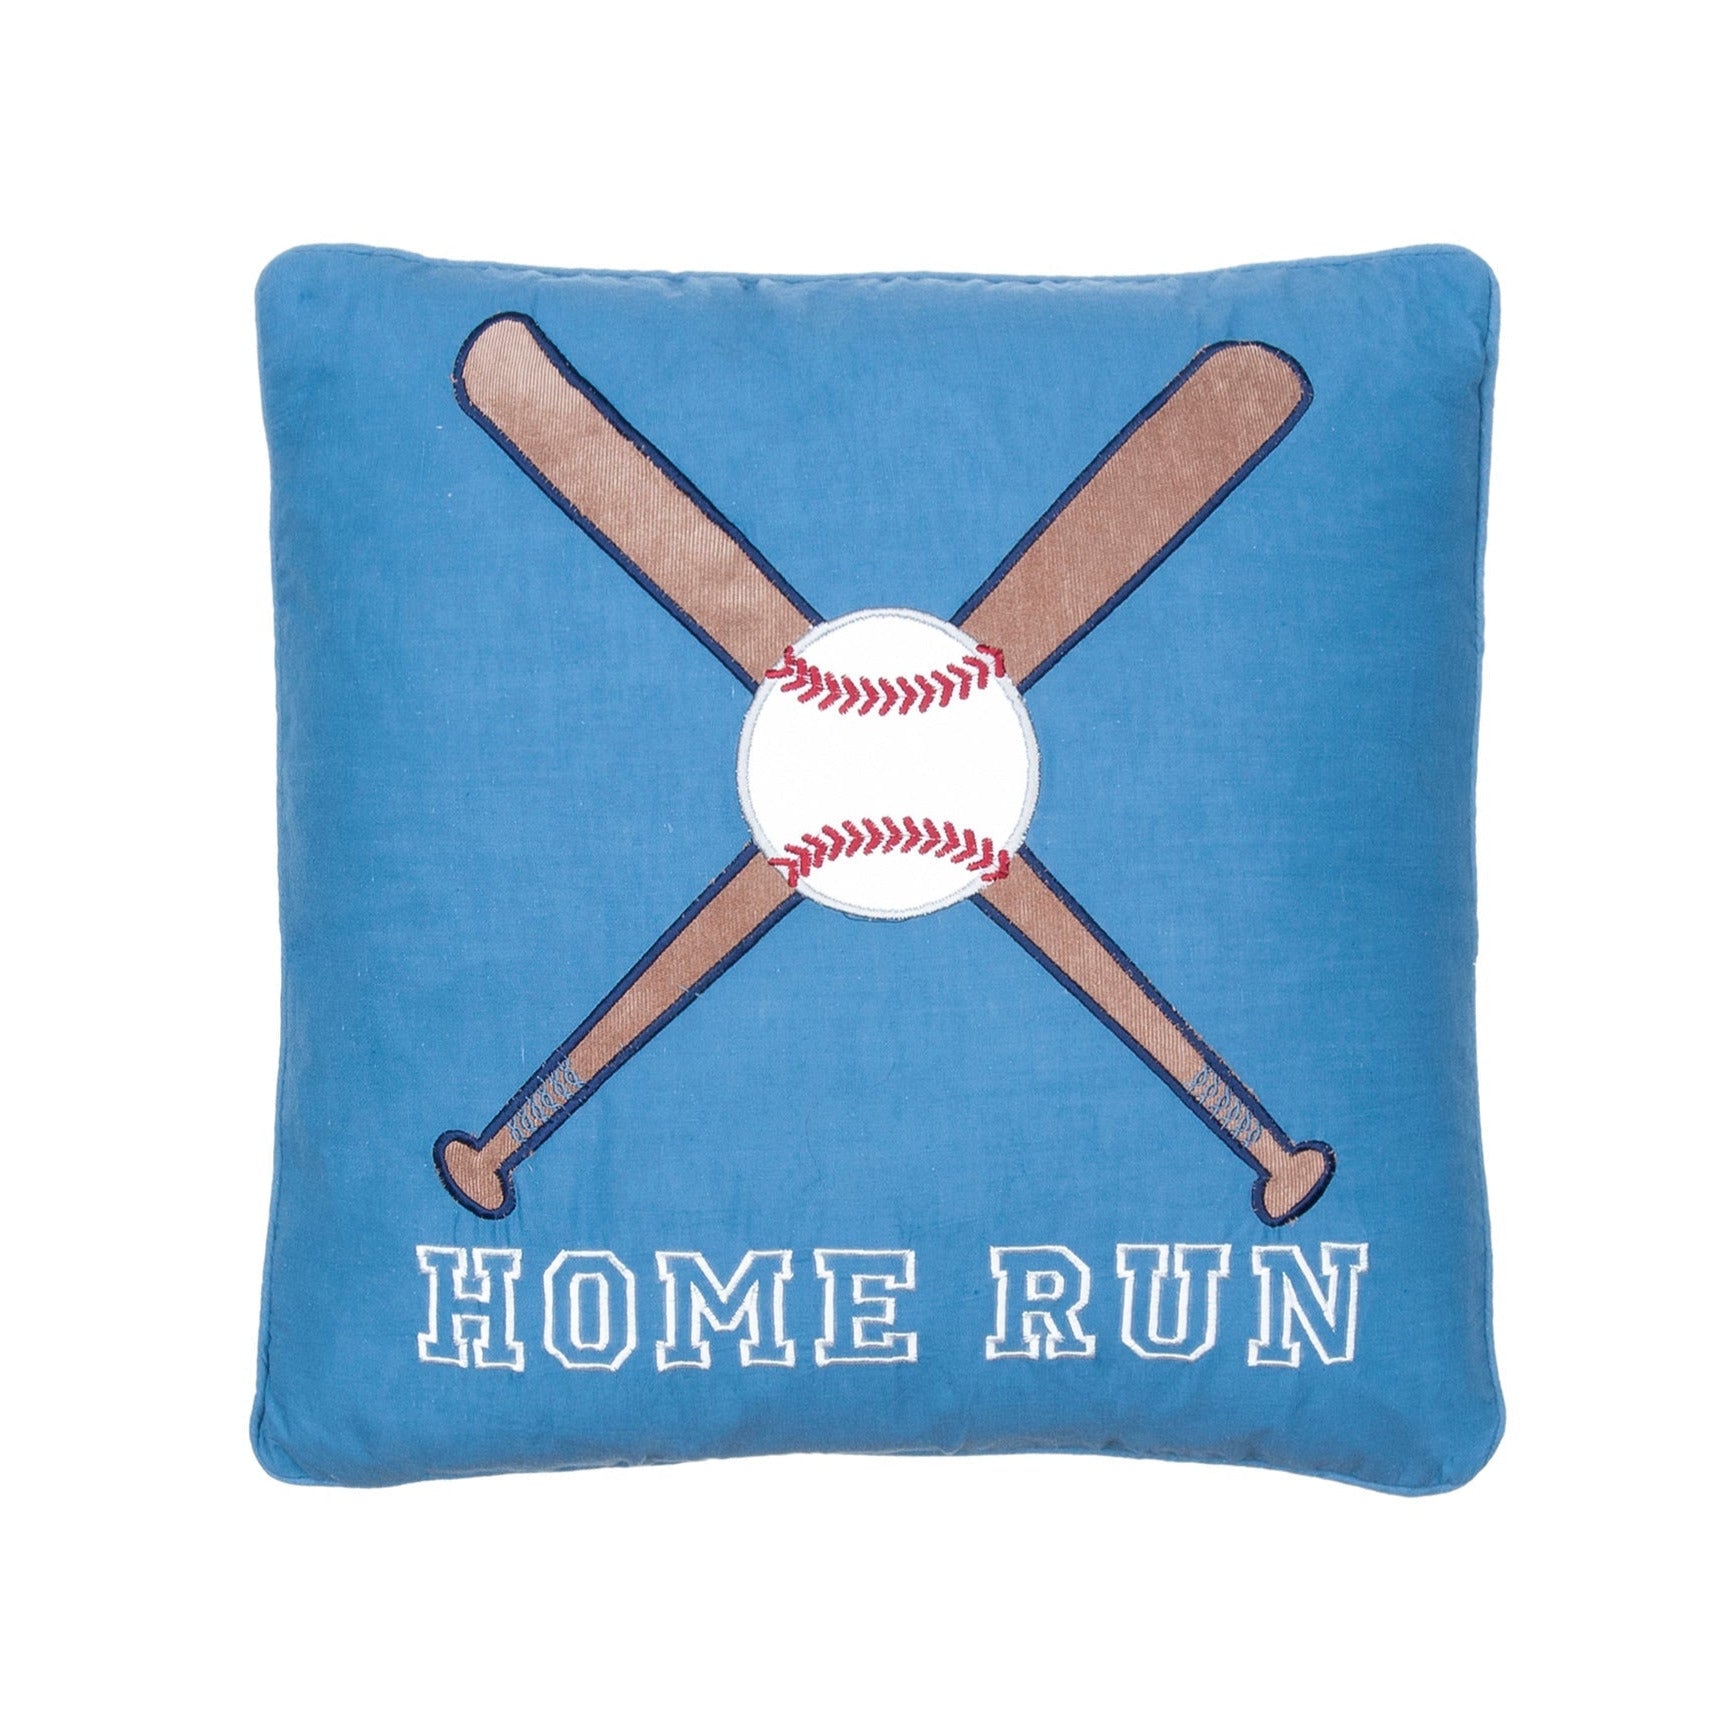 Home Run Pillow